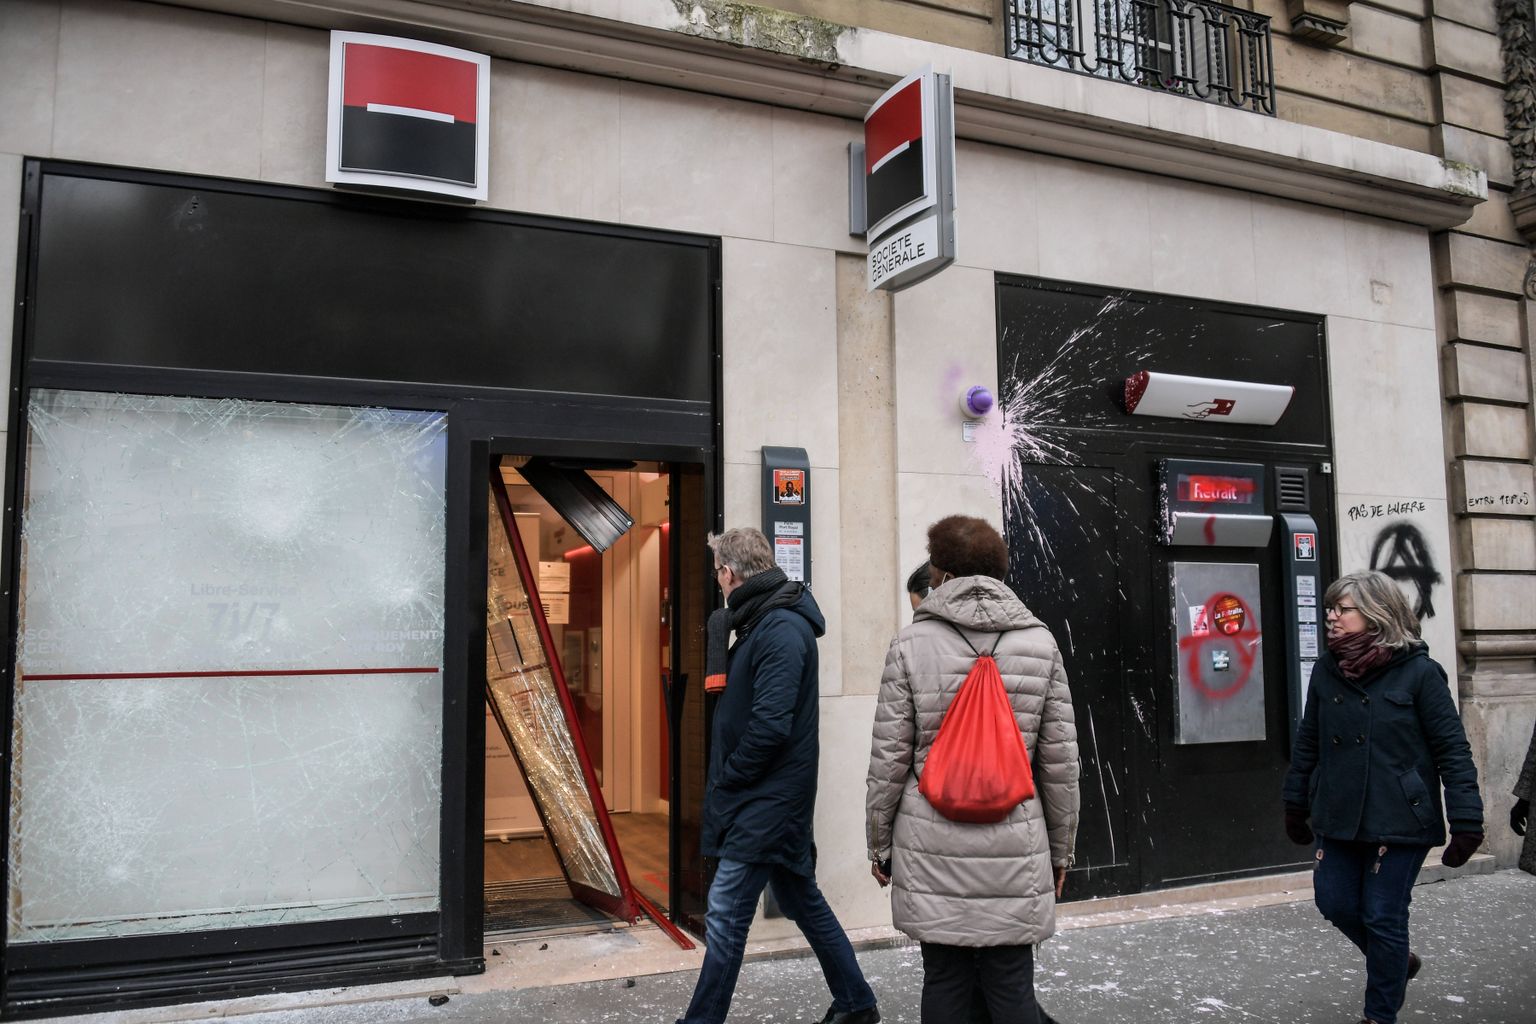 Inimesed elasid end välja Prantsusmaa valitsuse pensionireformi vastu, mille vastu protesteerides rüüstati Societe Generale'i pangakontorit Pariisis